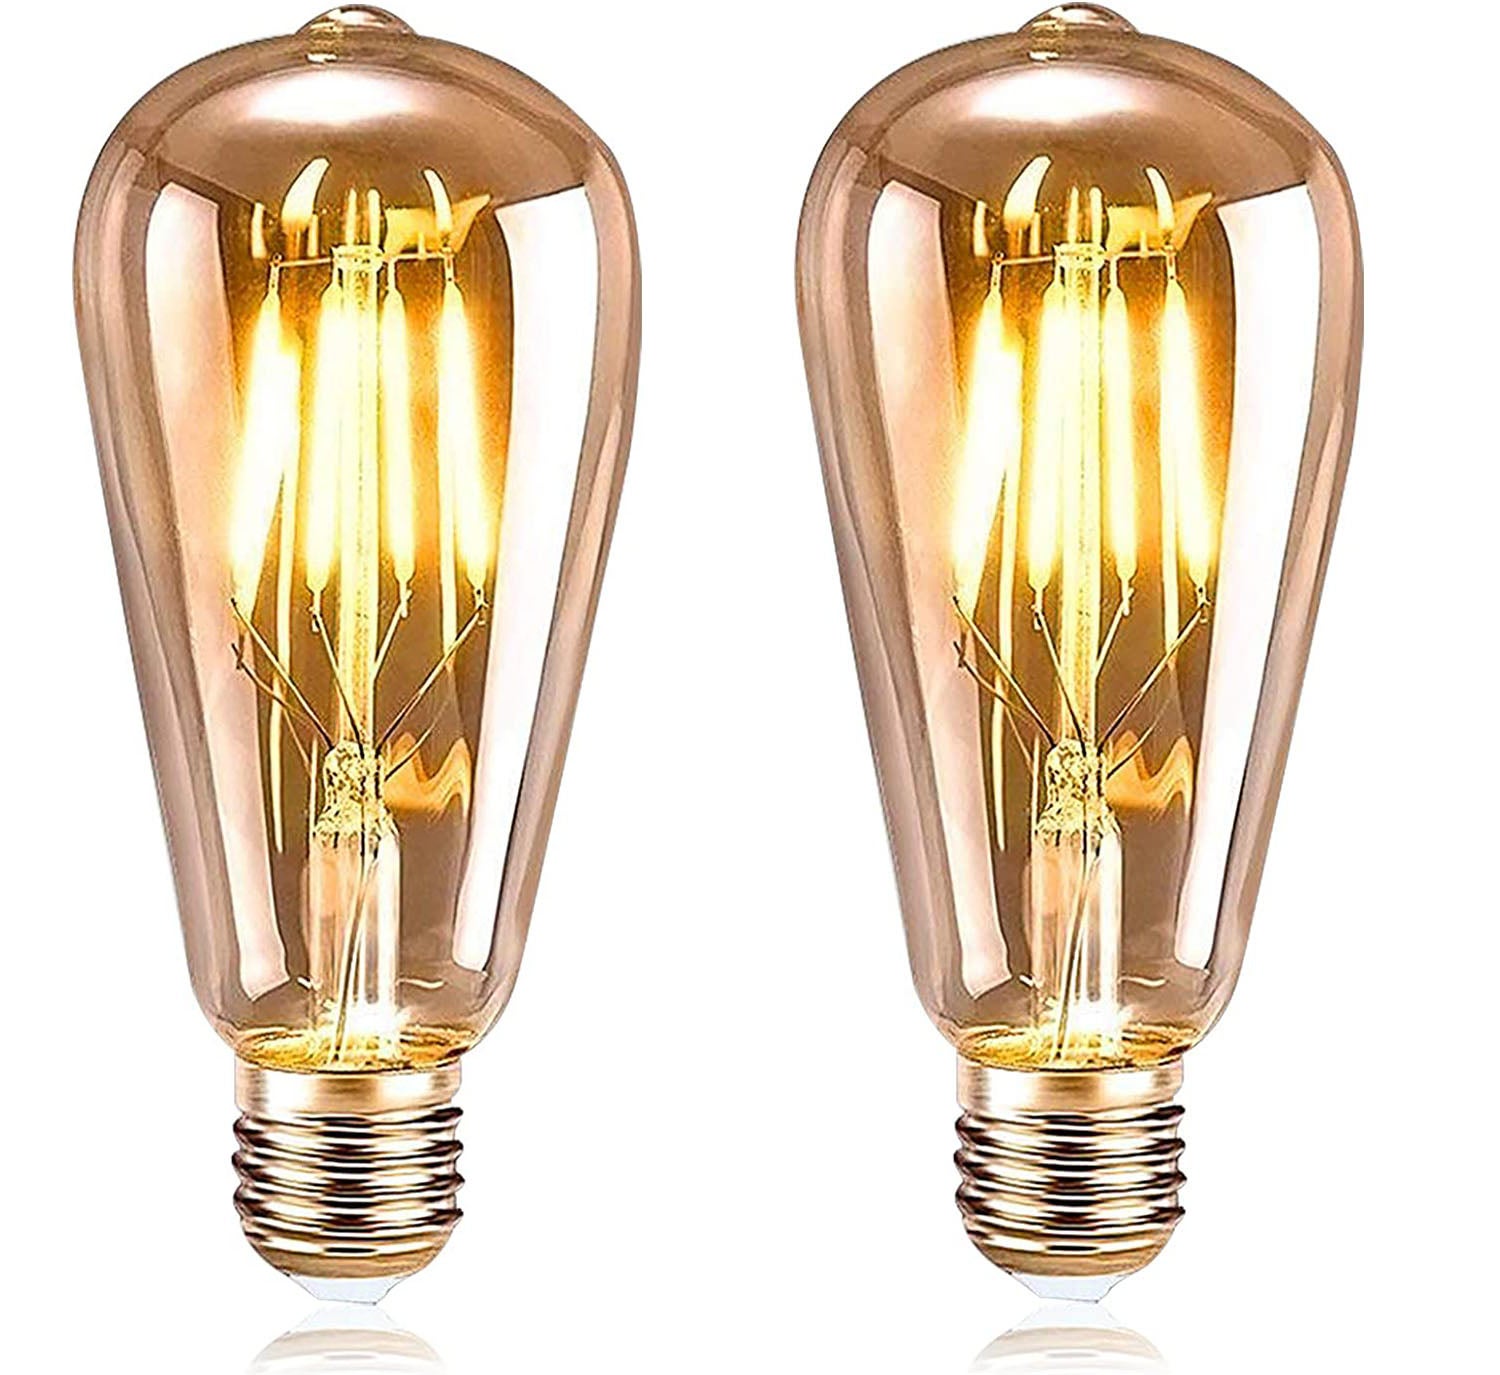 Ampoule E27 Vintage, 5 Pièces Ampoule Edison LED E27 ST64 Lampe